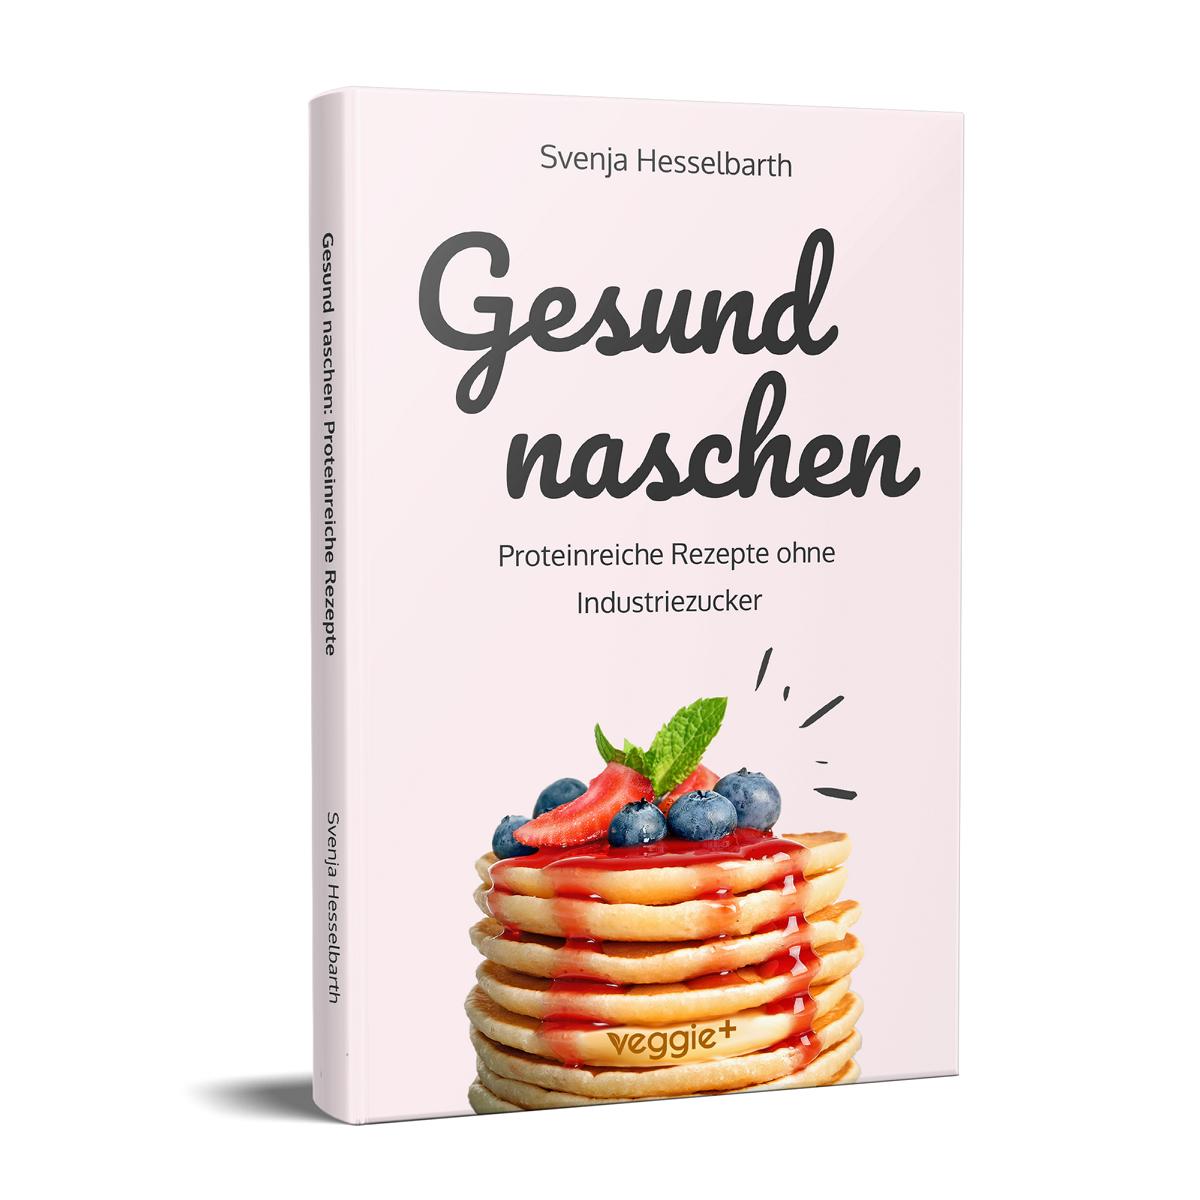 Gesund naschen: Proteinreiche und zuckerfreie Rezepte für gesunde Naschereien von Svenja Hesselbarth im veggie + Verlag